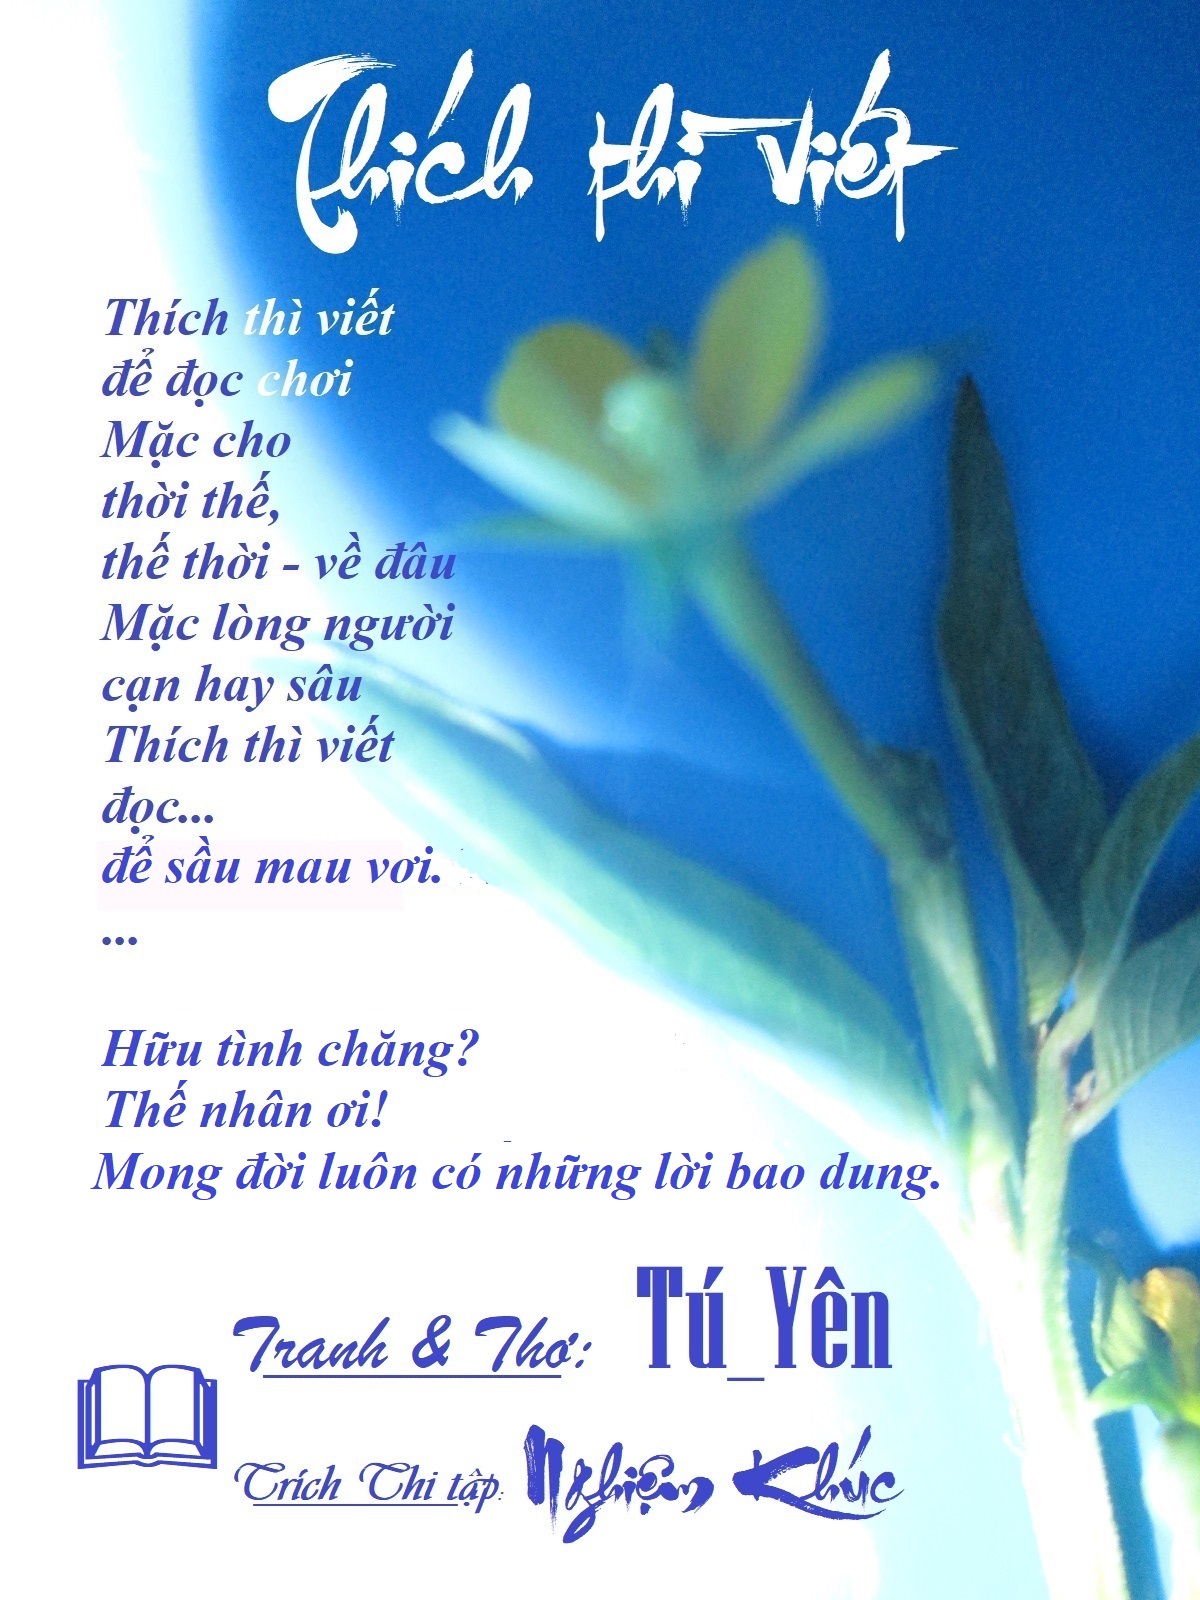 Tranh thơ Tú_Yên - Page 13 1thichthiviet-1